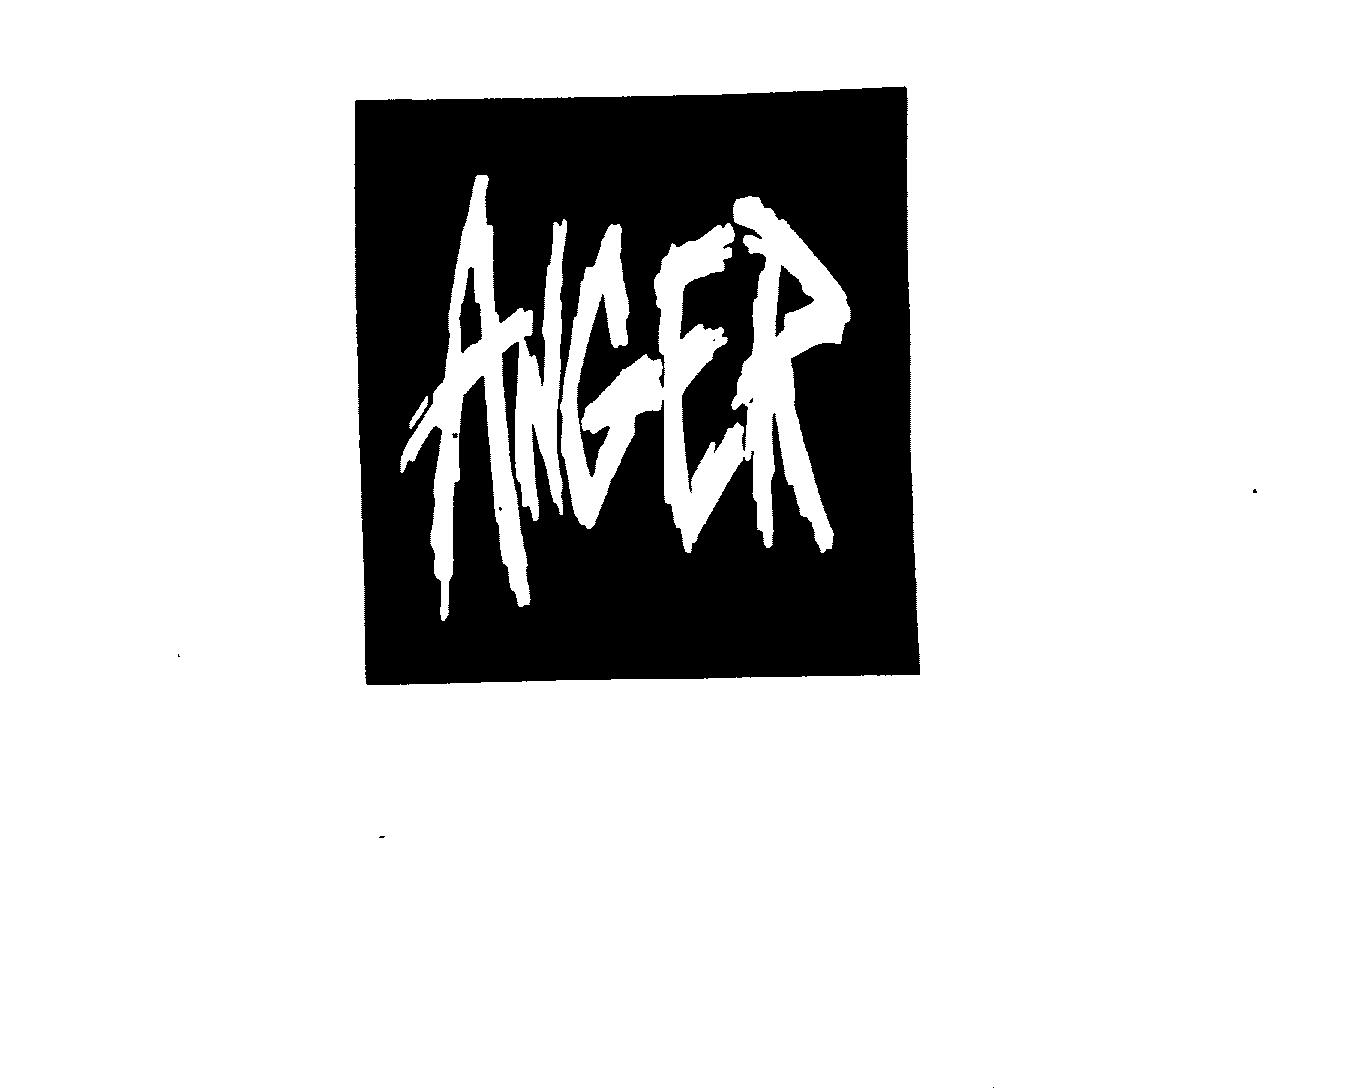 Trademark Logo ANGER